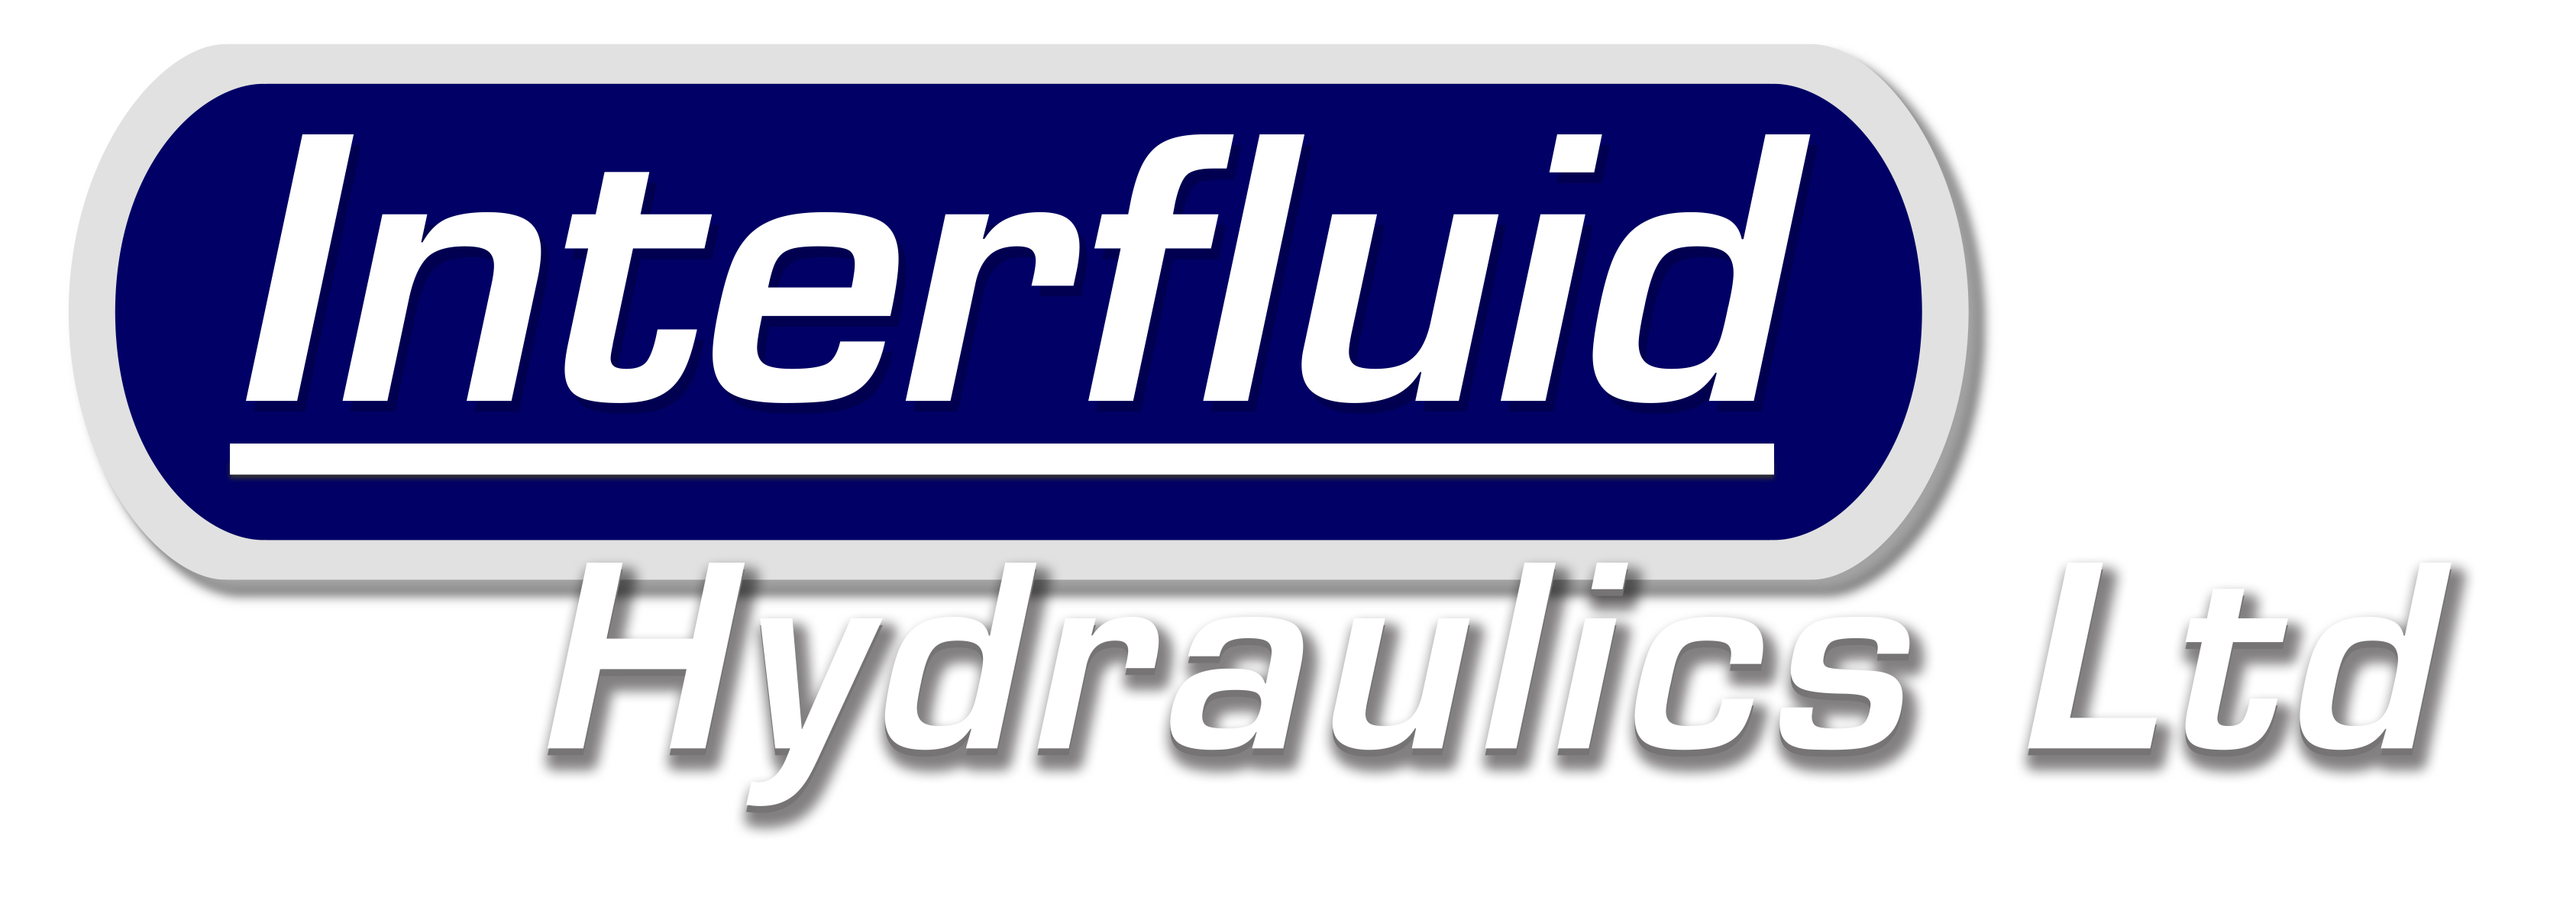 Interfluid Hydraulics Ltd.